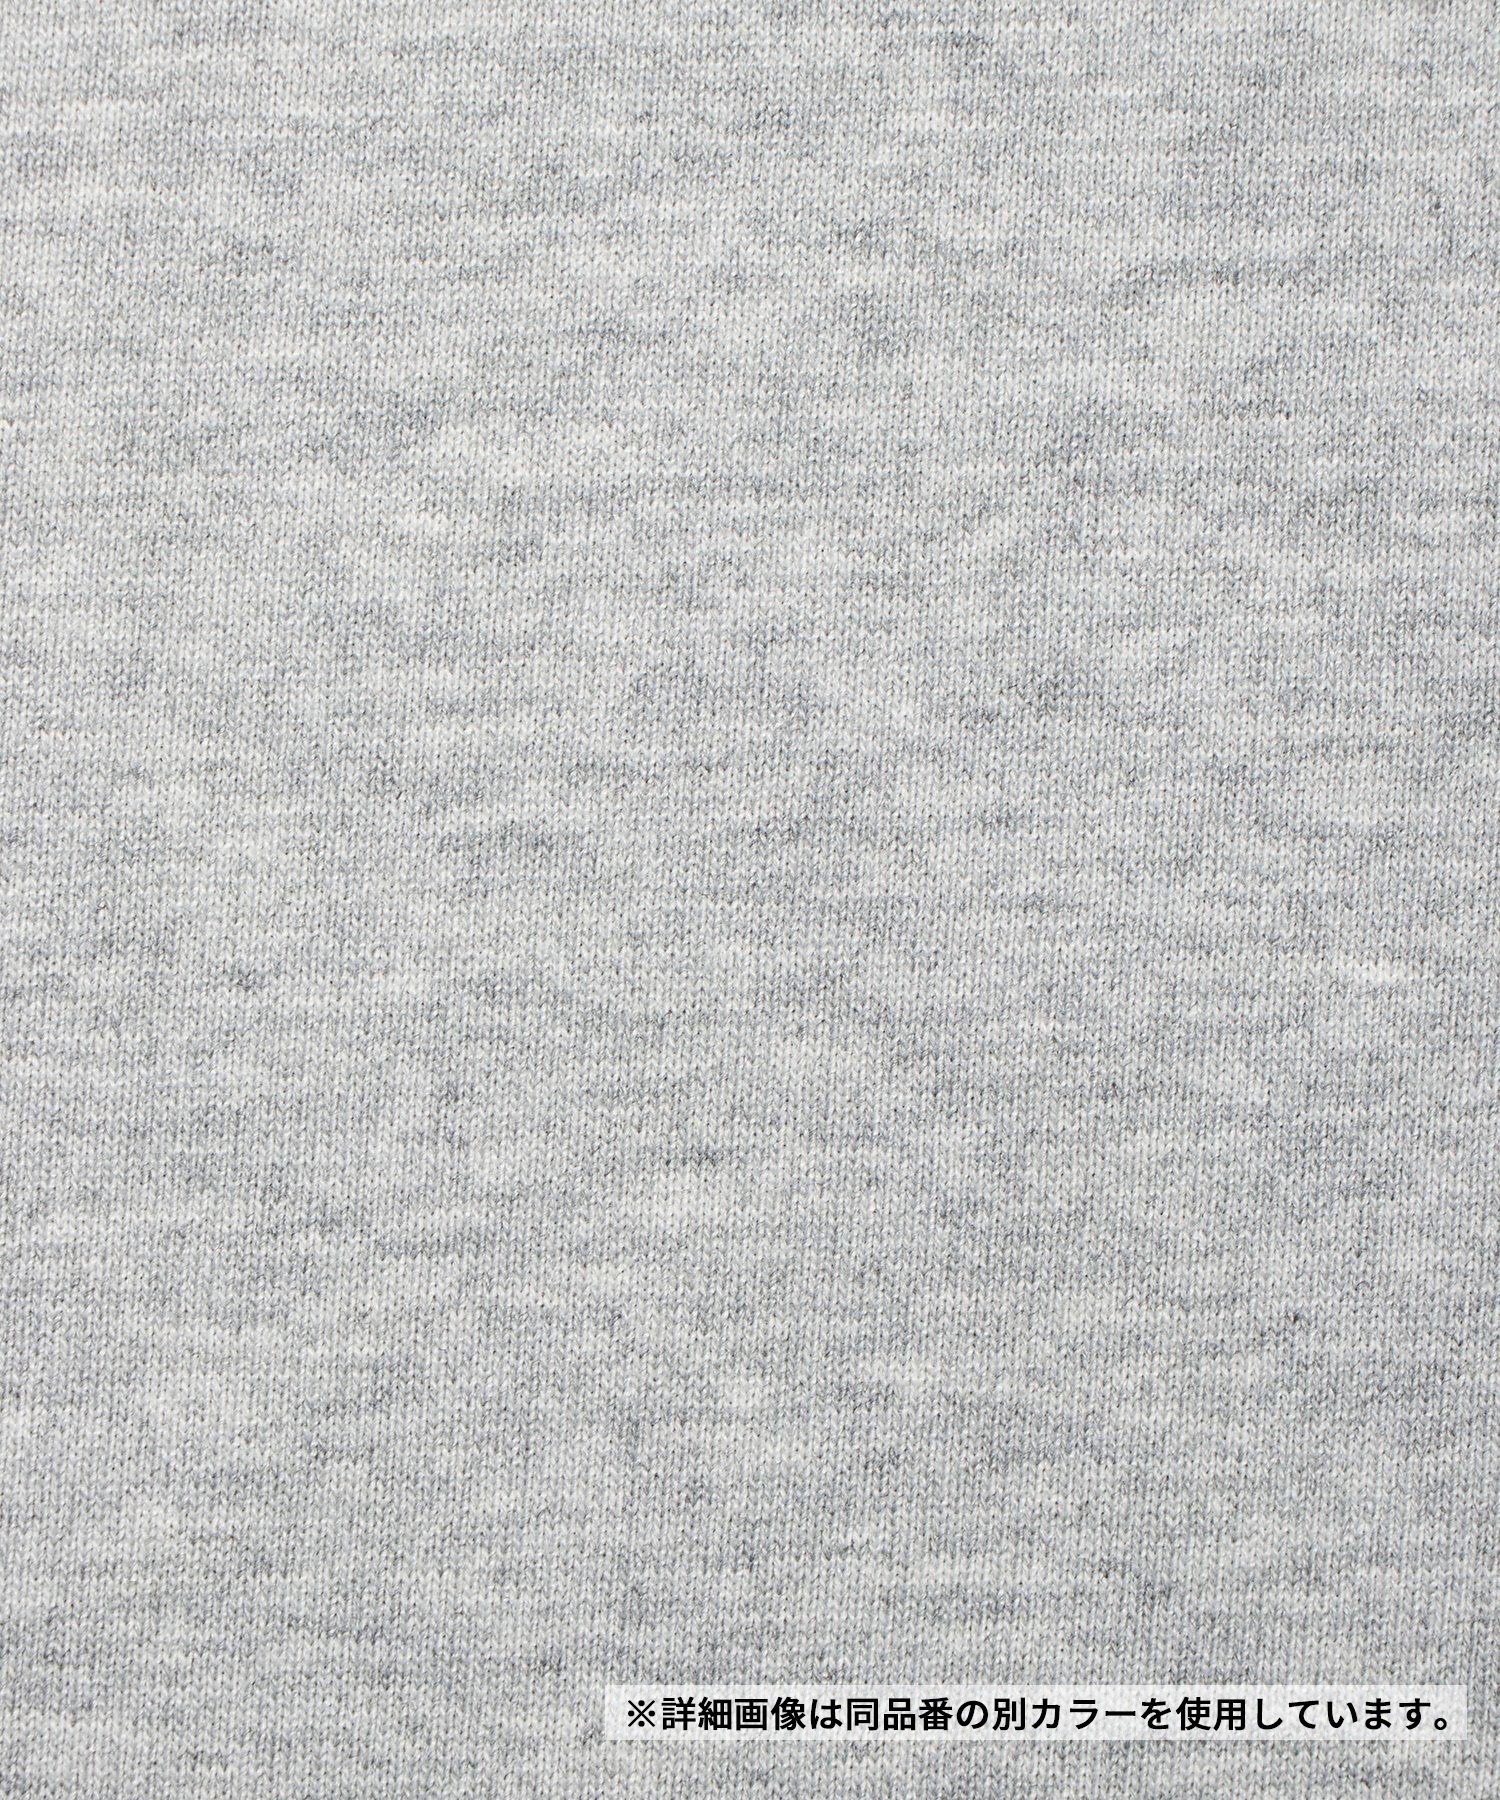 【マトメガイ対象】THE NORTH FACE ザ・ノース・フェイス メンズ Tシャツ 半袖 スクエアロゴ バックプリント 速乾 NT32447 K(K-S)